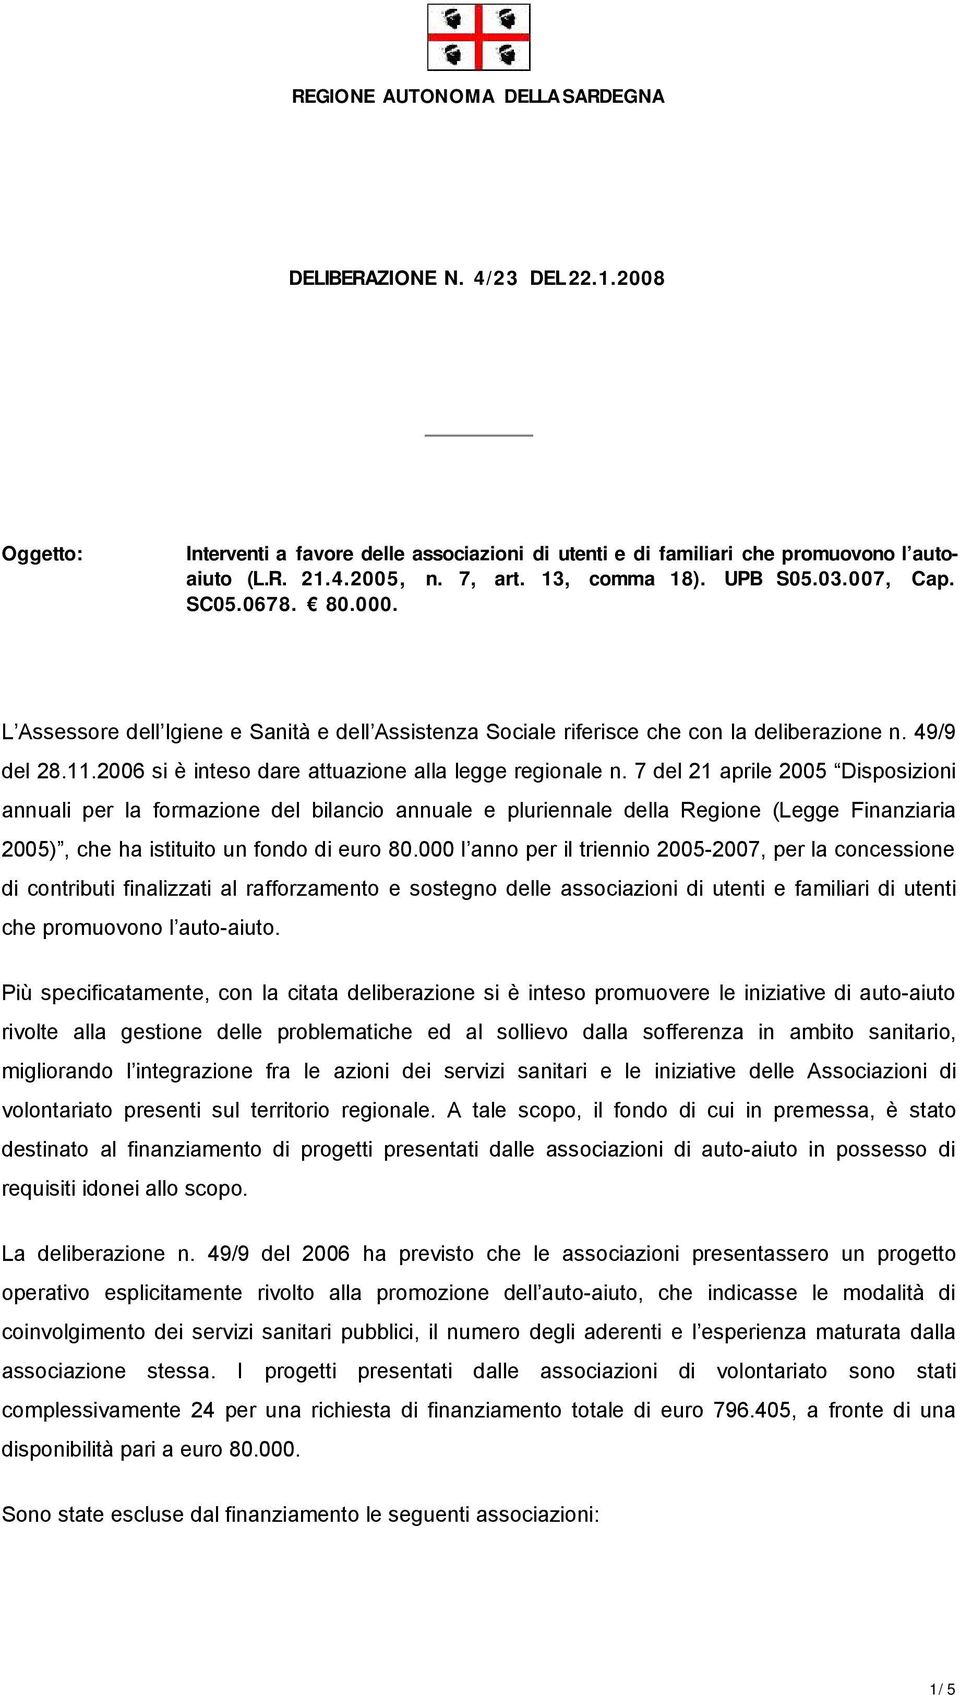 7 del 21 aprile 2005 Dispsizini annuali per la frmazine del bilanci annuale e pluriennale della Regine (Legge Finanziaria 2005), che ha istituit un fnd di eur 80.